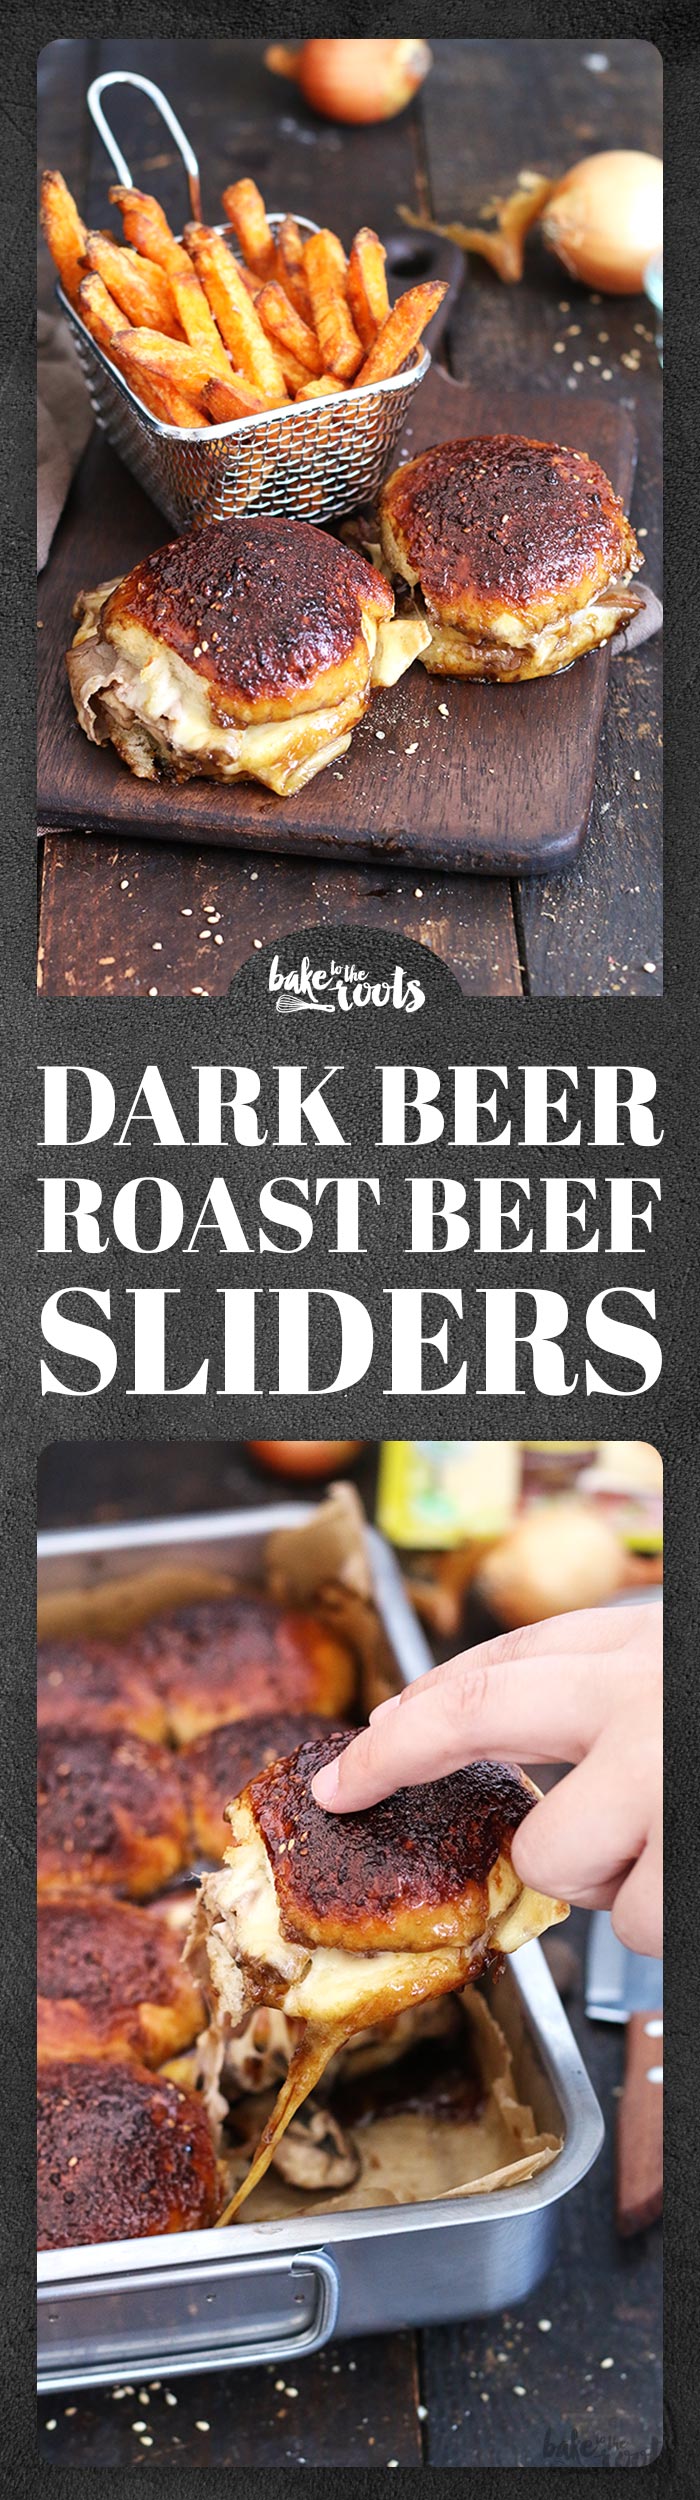 Dark Beer Roast Beef Sliders | Bake to the roots